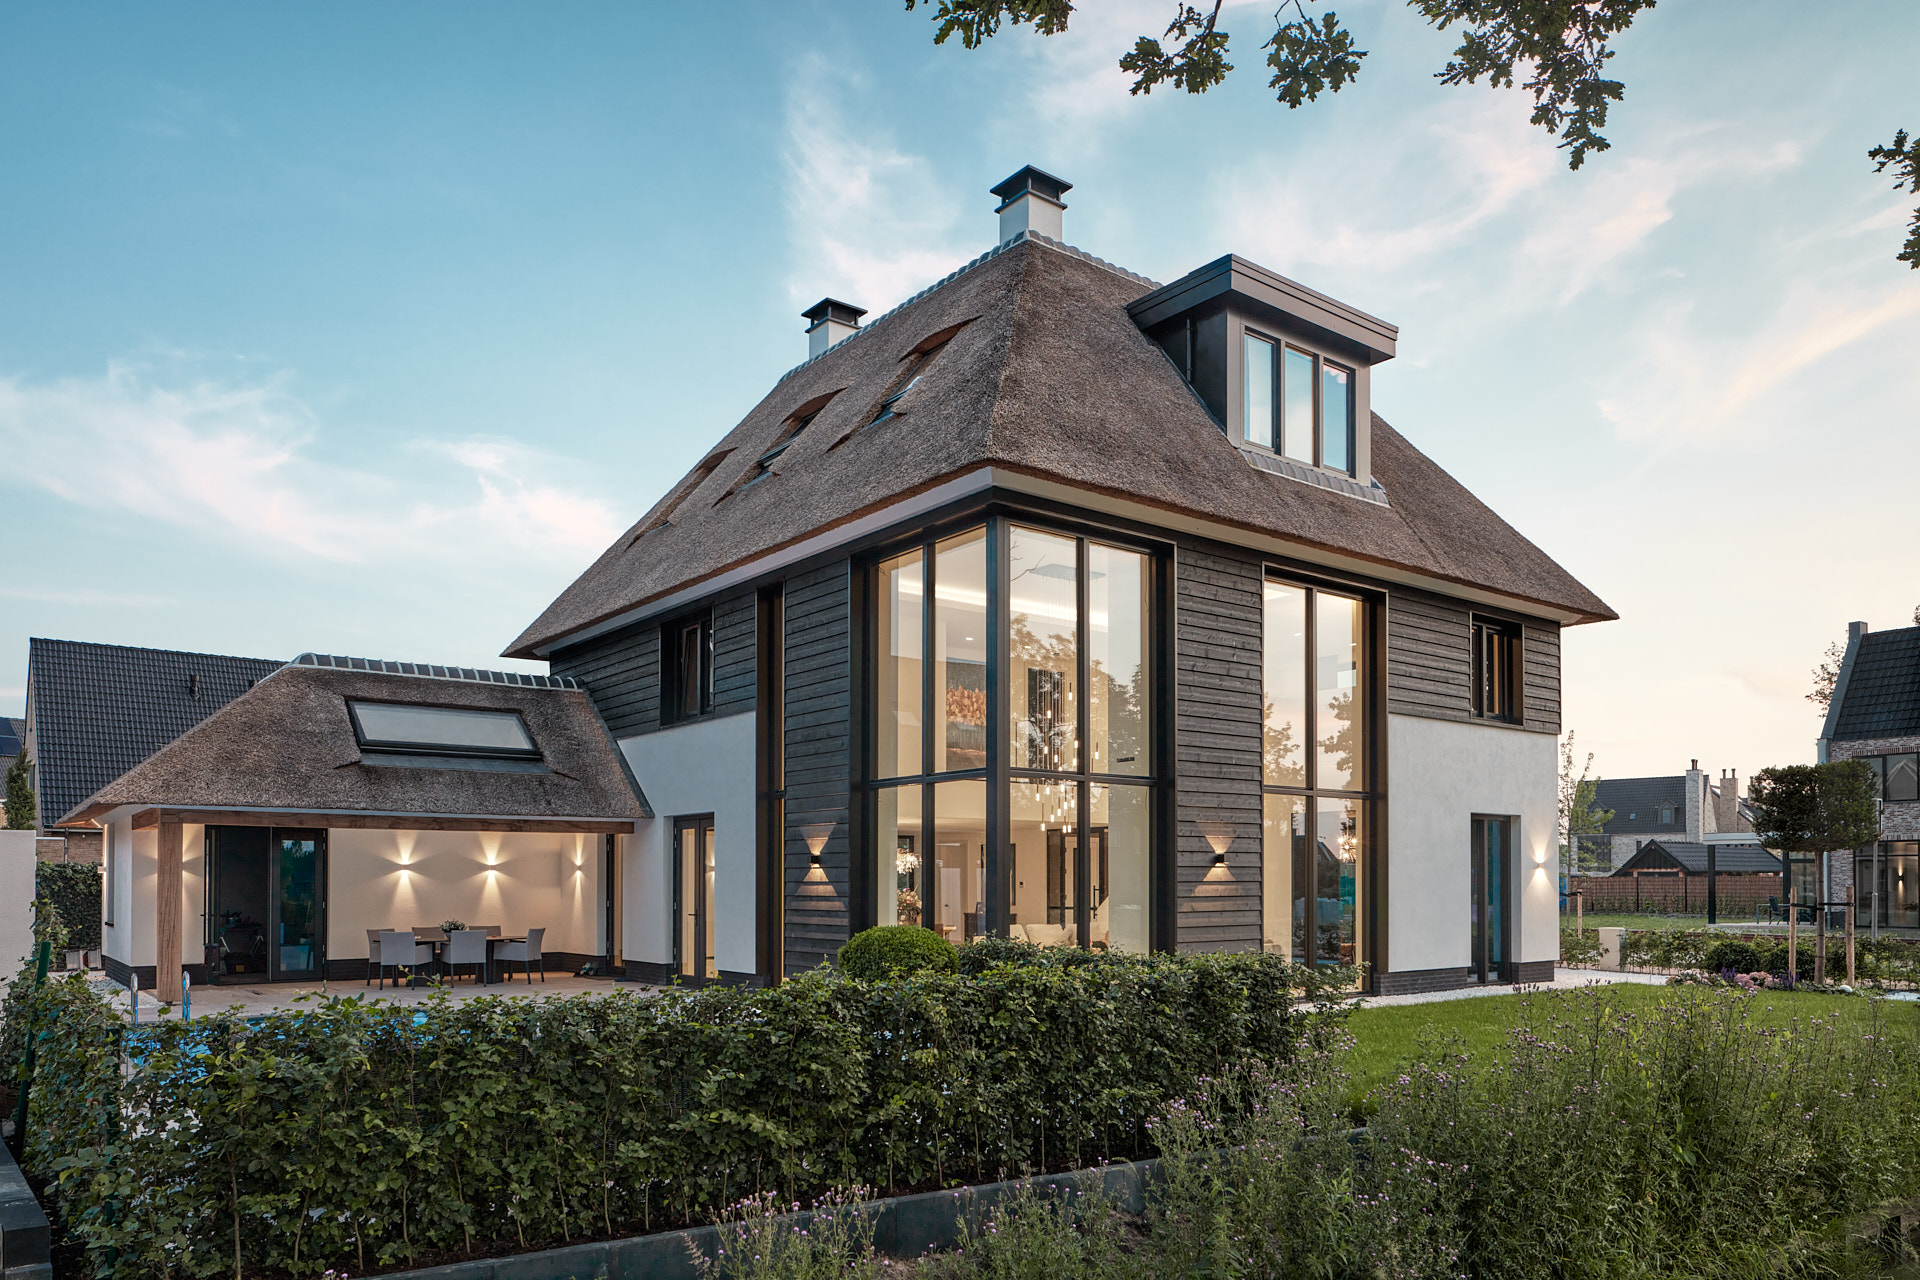 Nieuwbouwvilla Haarzicht door architect Maxim Winkelaar